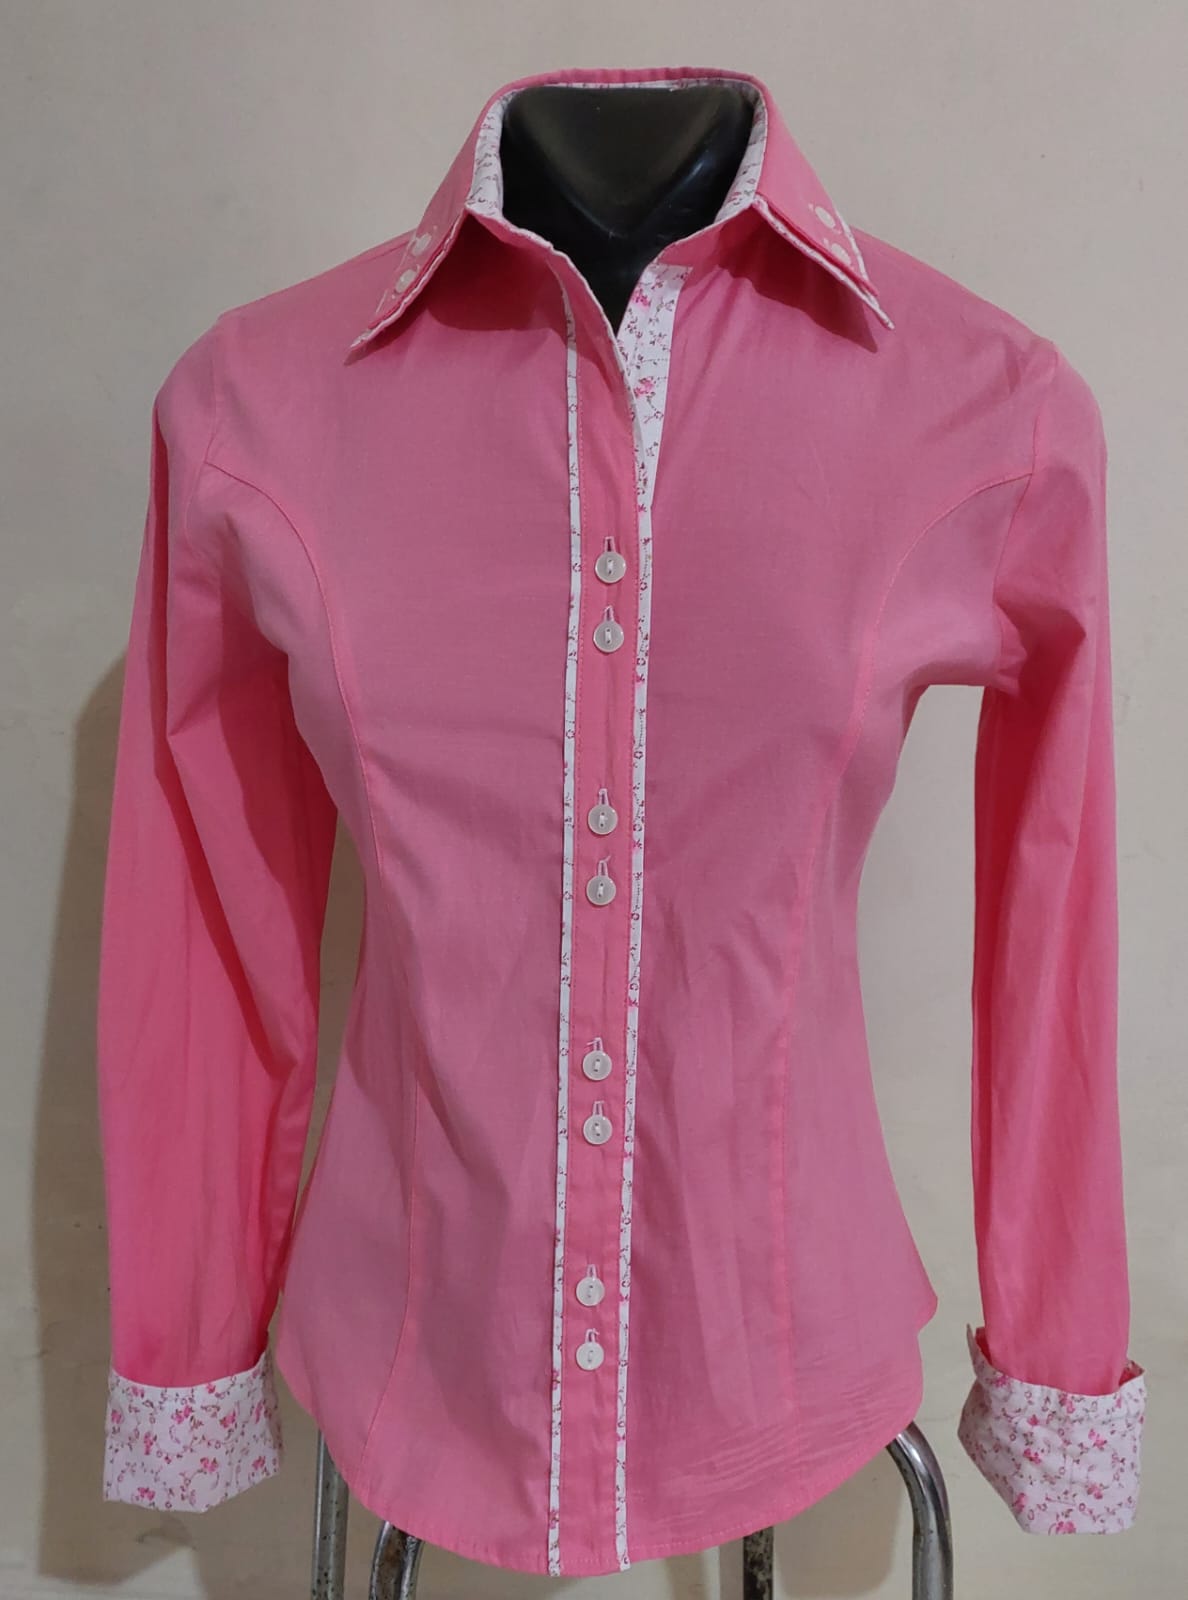 COD 10428L – Camisa feminina, tamanho P, em algodão poliéster e elastano,  Seminova